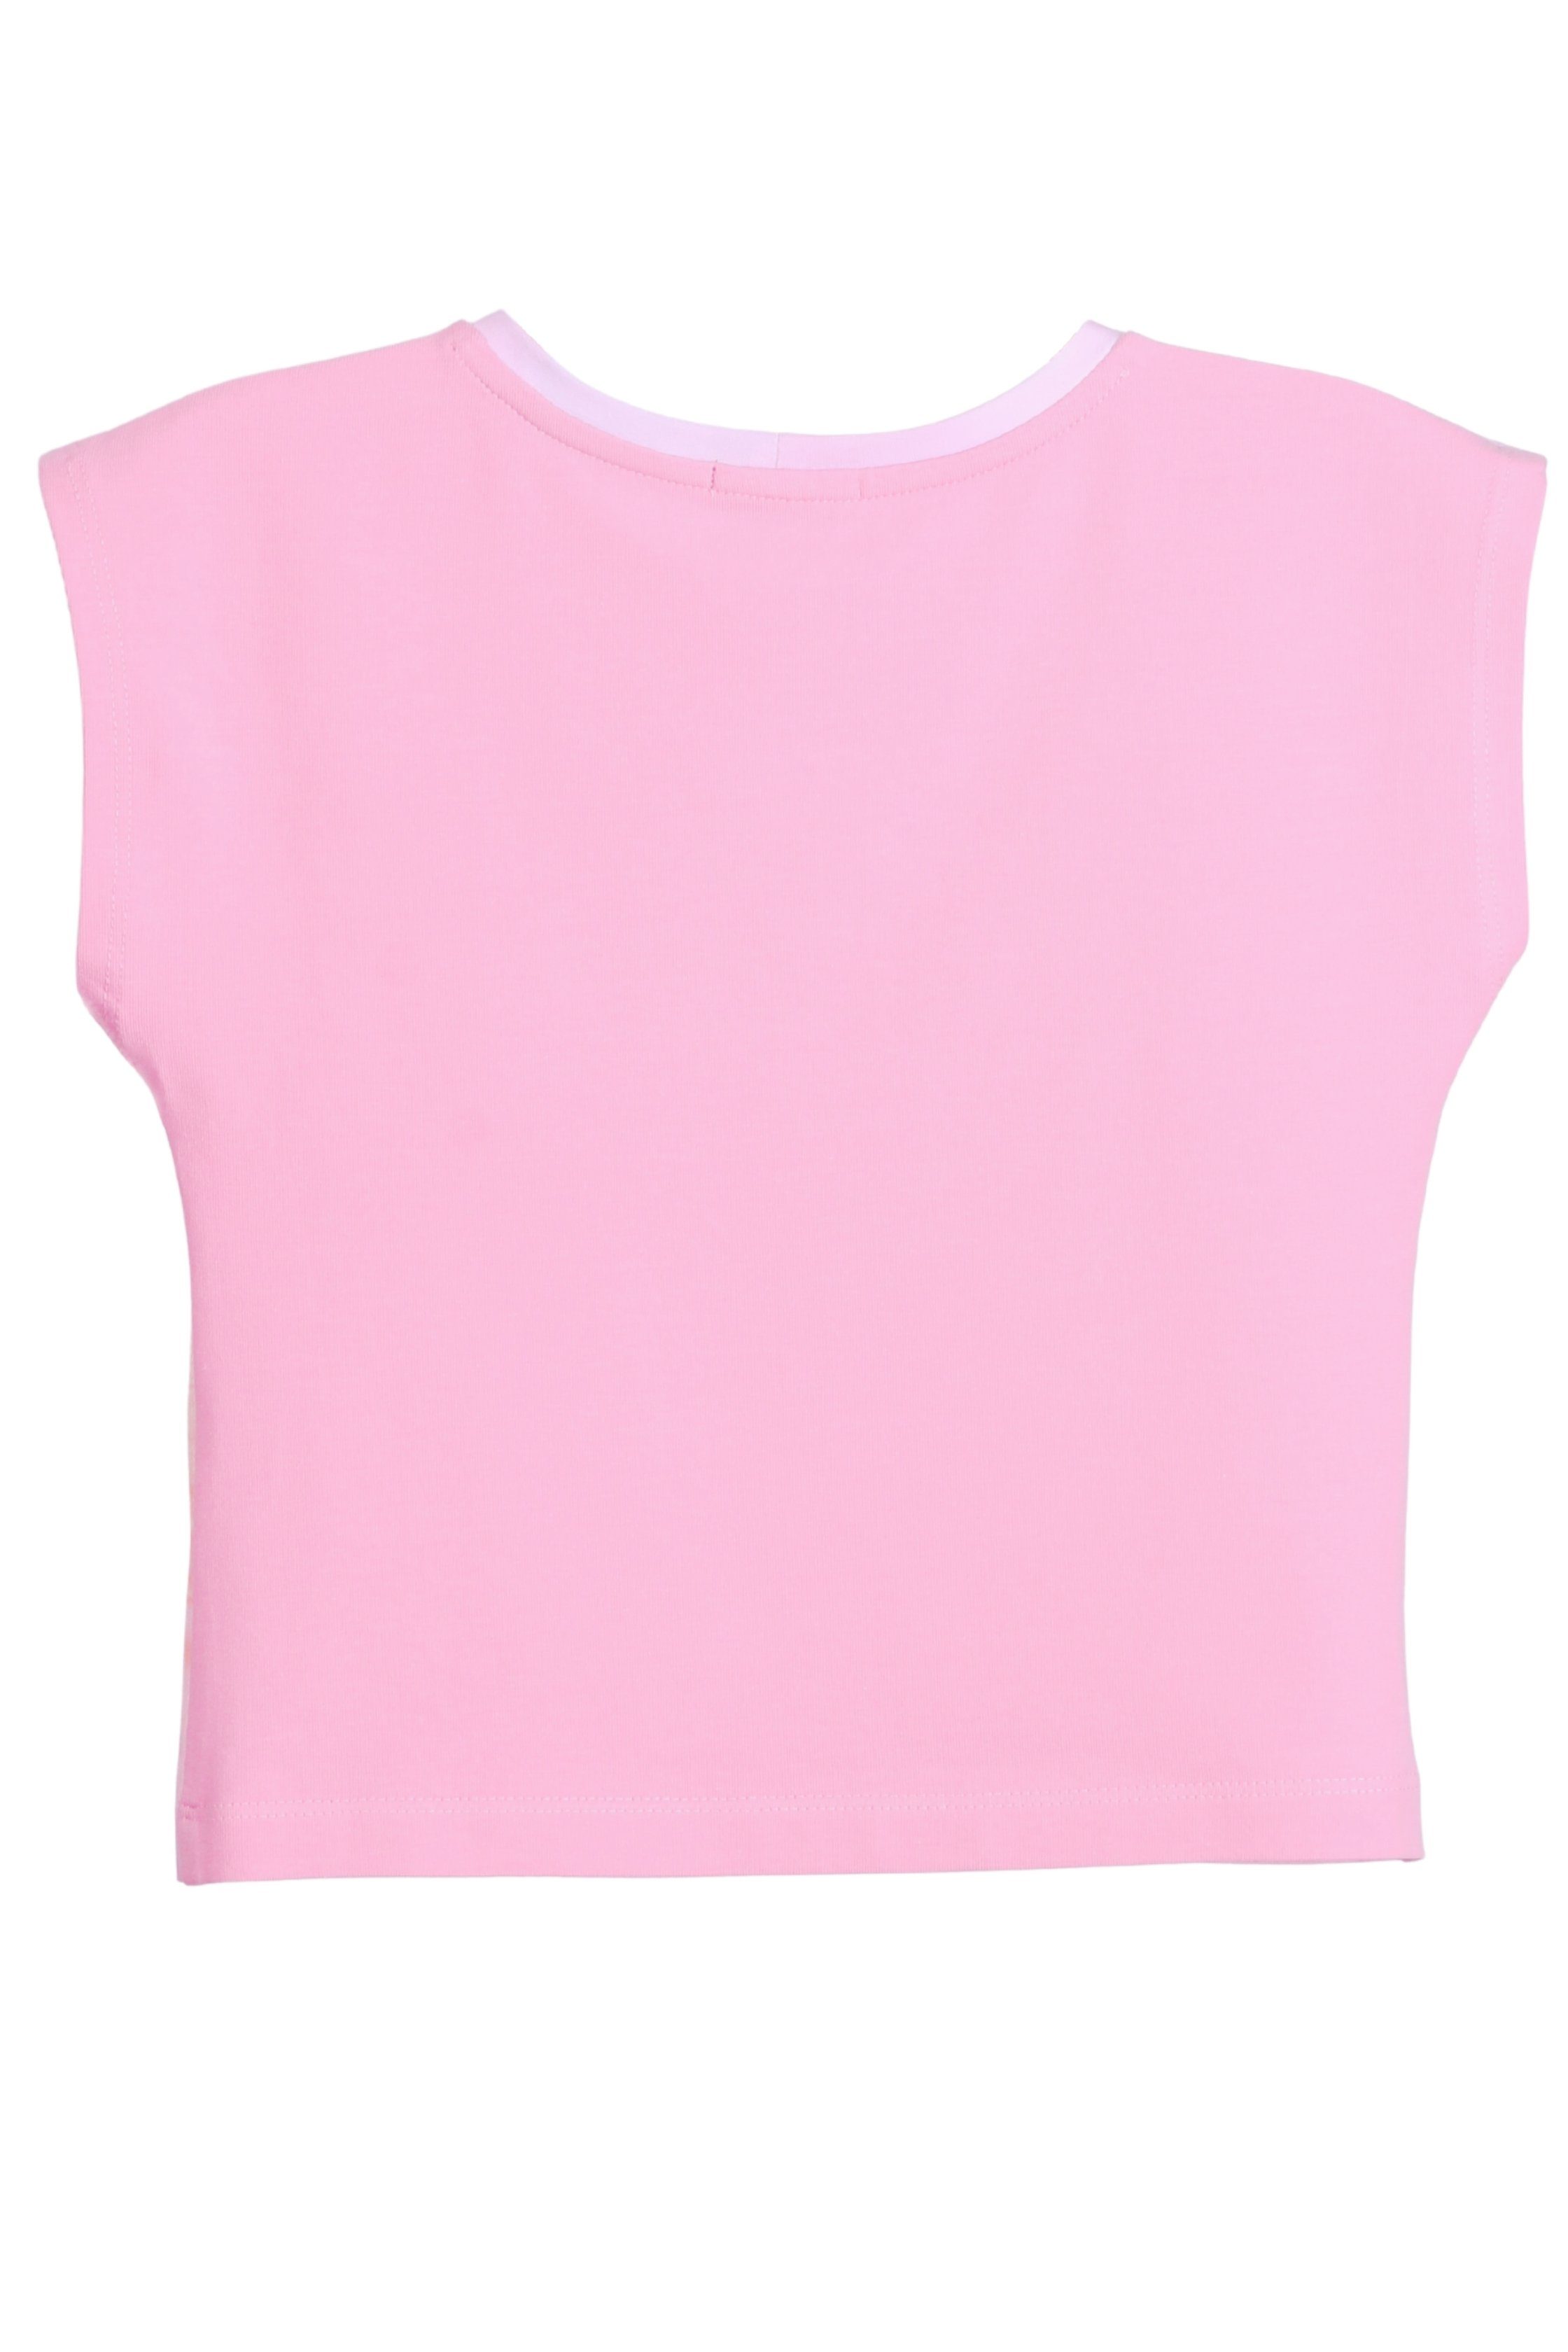 Schwäne T-Shirt mit coolismo Mädchen & Shorts Set niedliche Baumwolle, T-Shirt Motiv-Print & 2-tlg., Allover-Print Shorts) Rose (SET, für